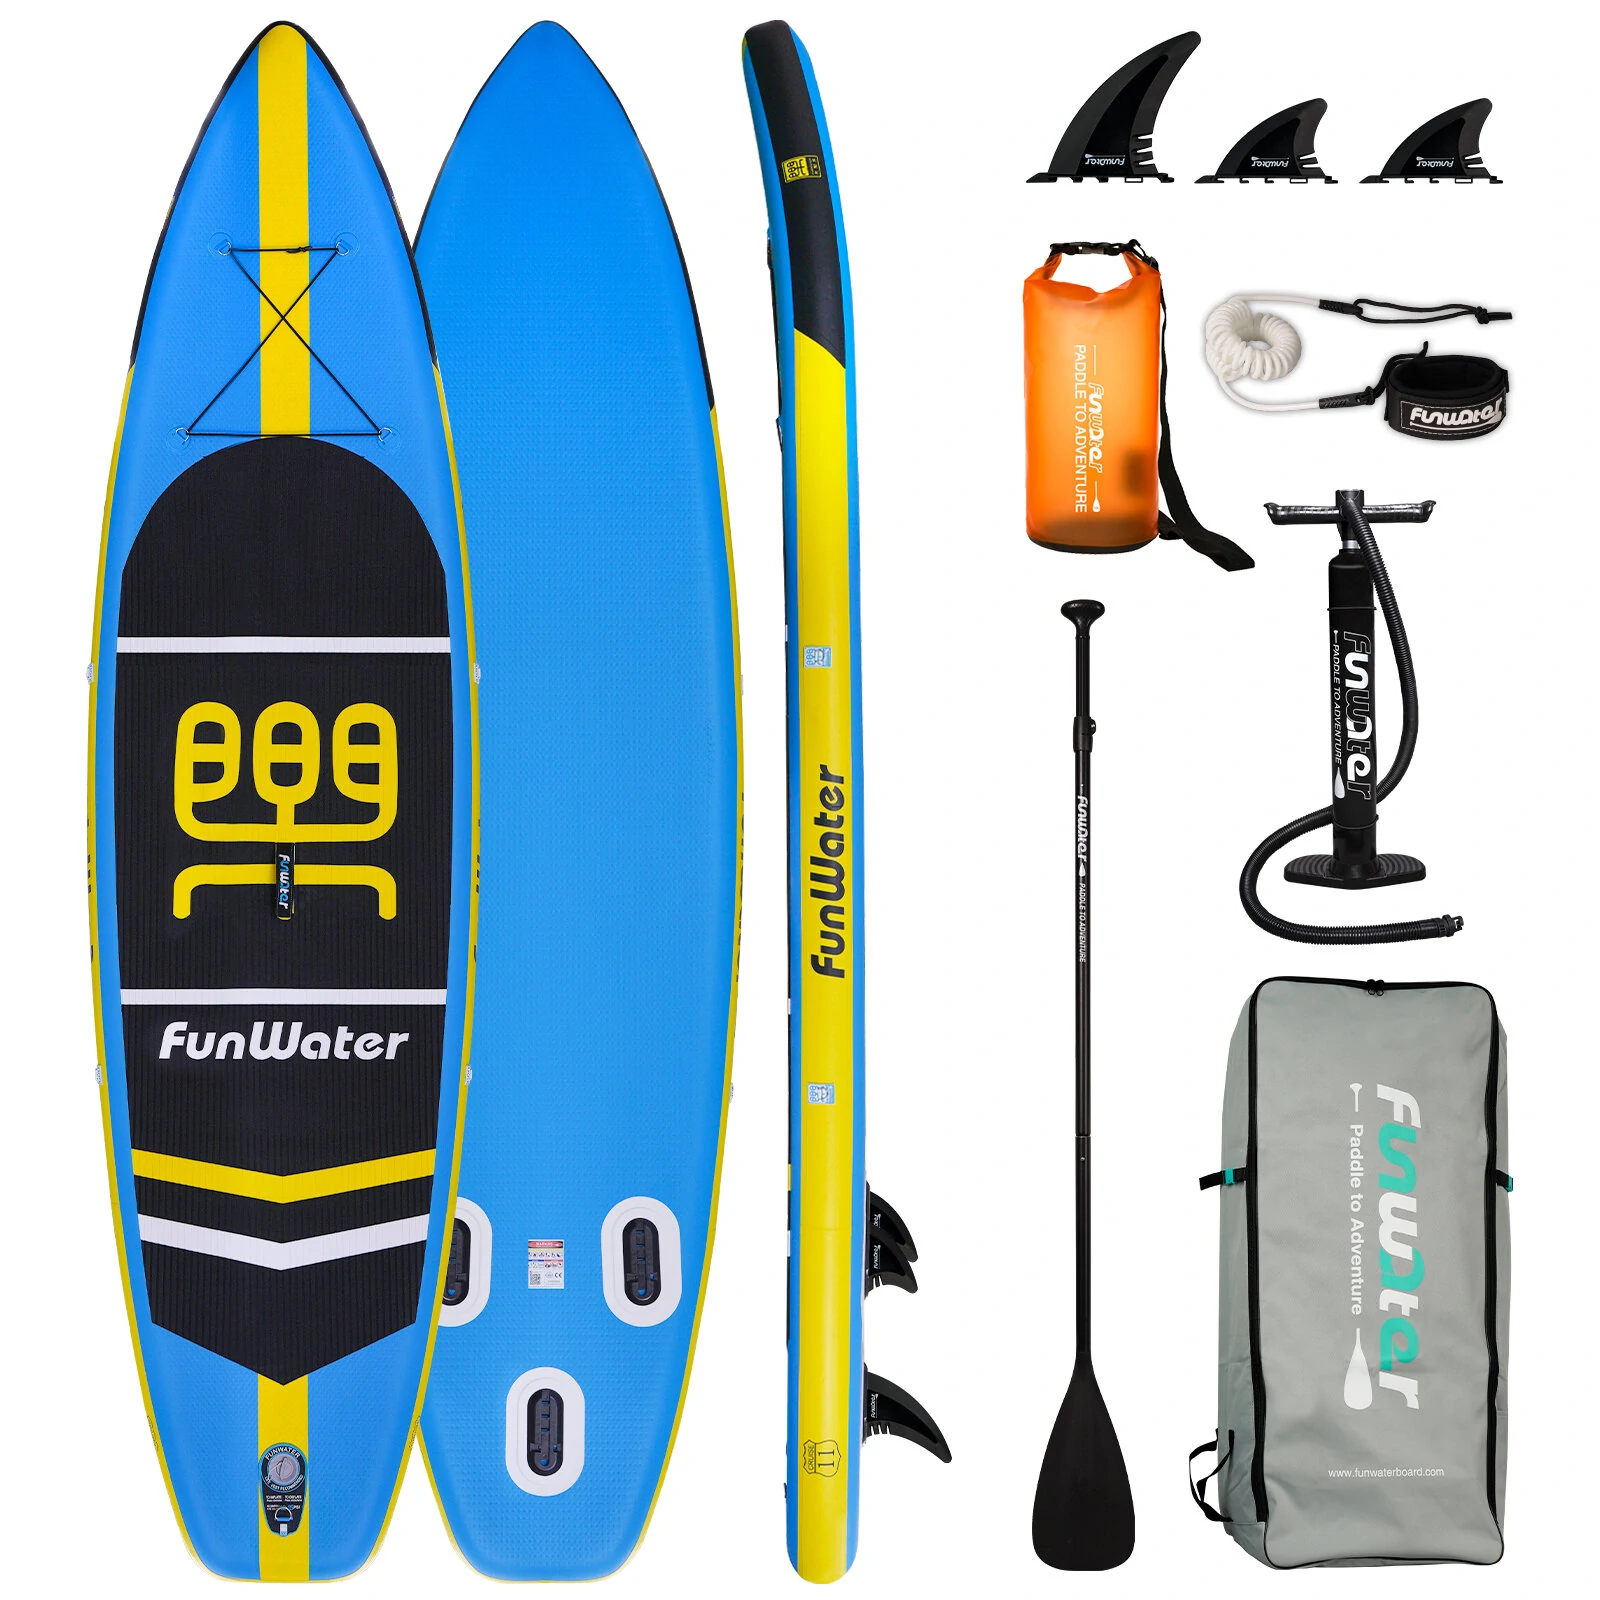 Χαμηλότερη τιμή ως σήμερα στα 157,19€ από αποθήκη Τσεχίας | [EU Direct] FunWater Inflatable Stand Up Paddle Board Surfboard 335x84x15cm Ultra-Light for All Levels with 10L Dry Bag Travel Backpack SUPFW03B